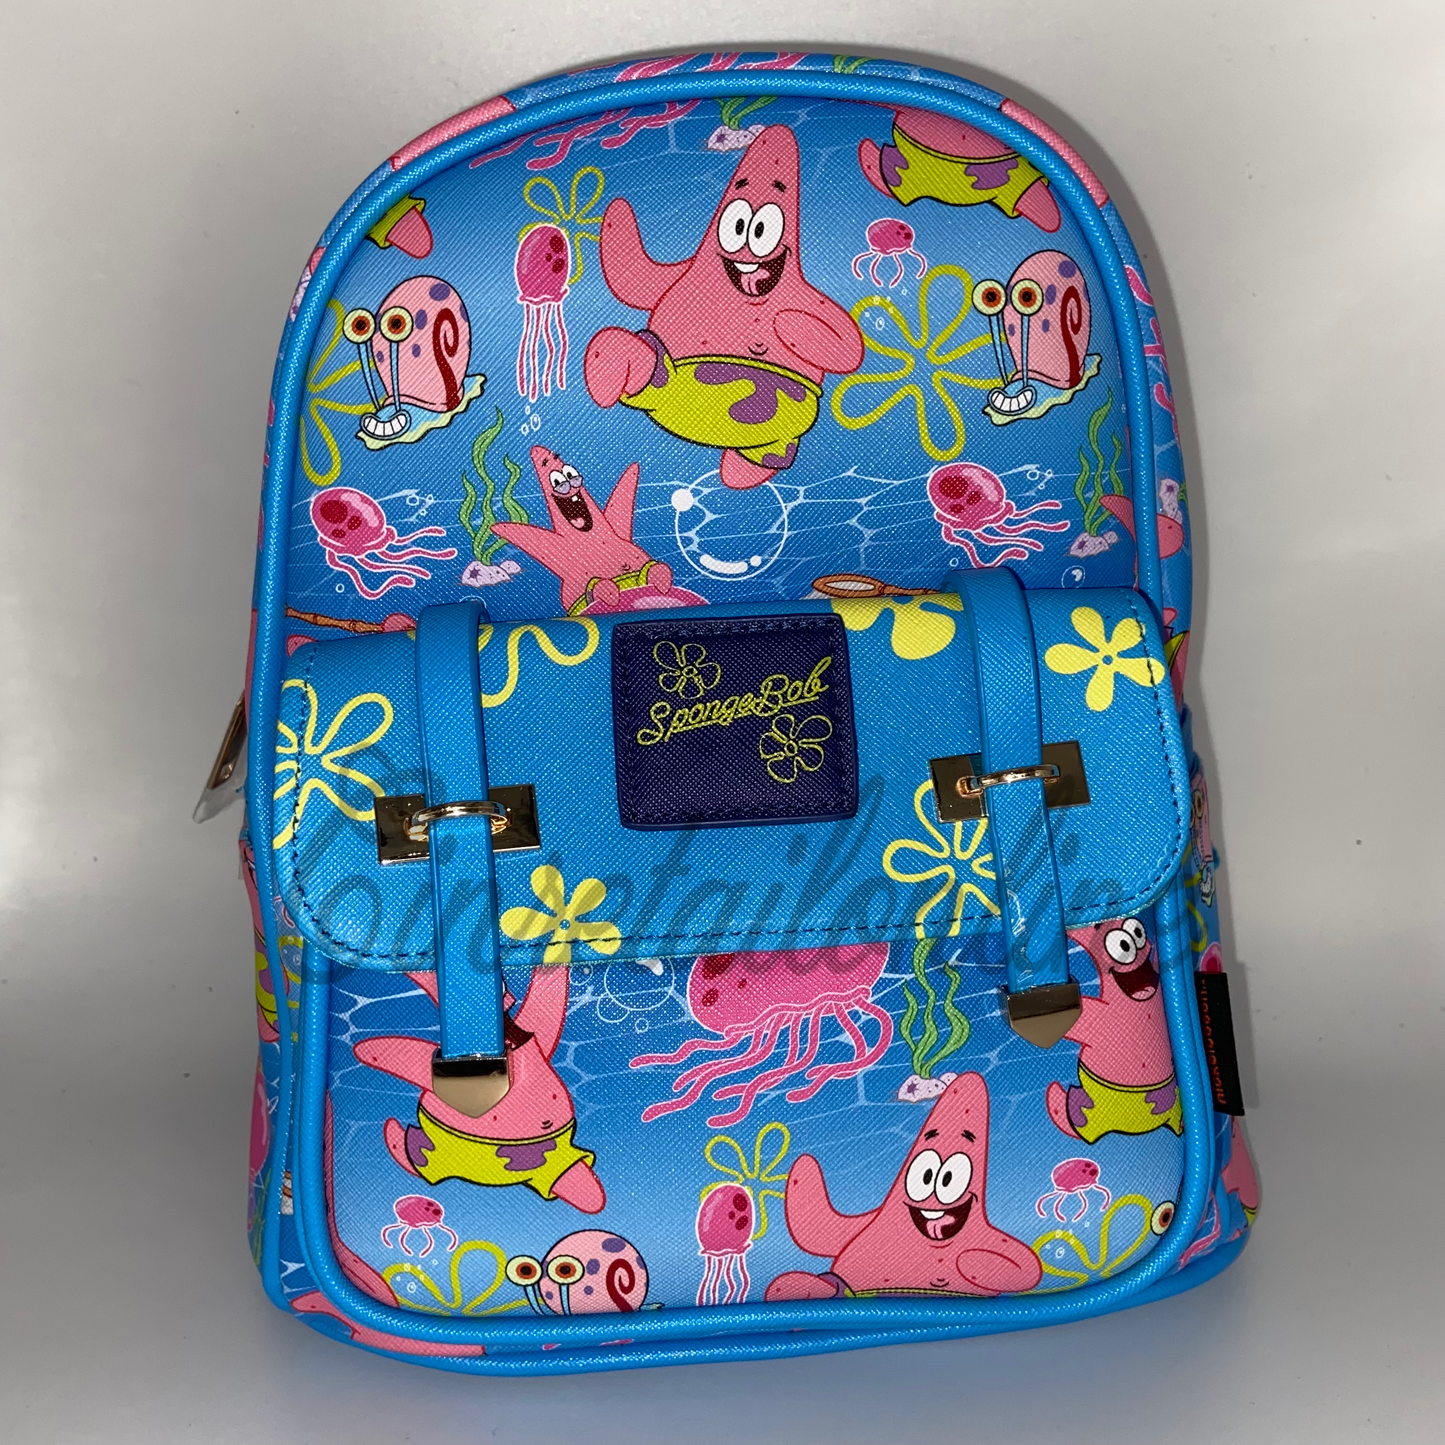 Patrick star backpack (sponge bob)